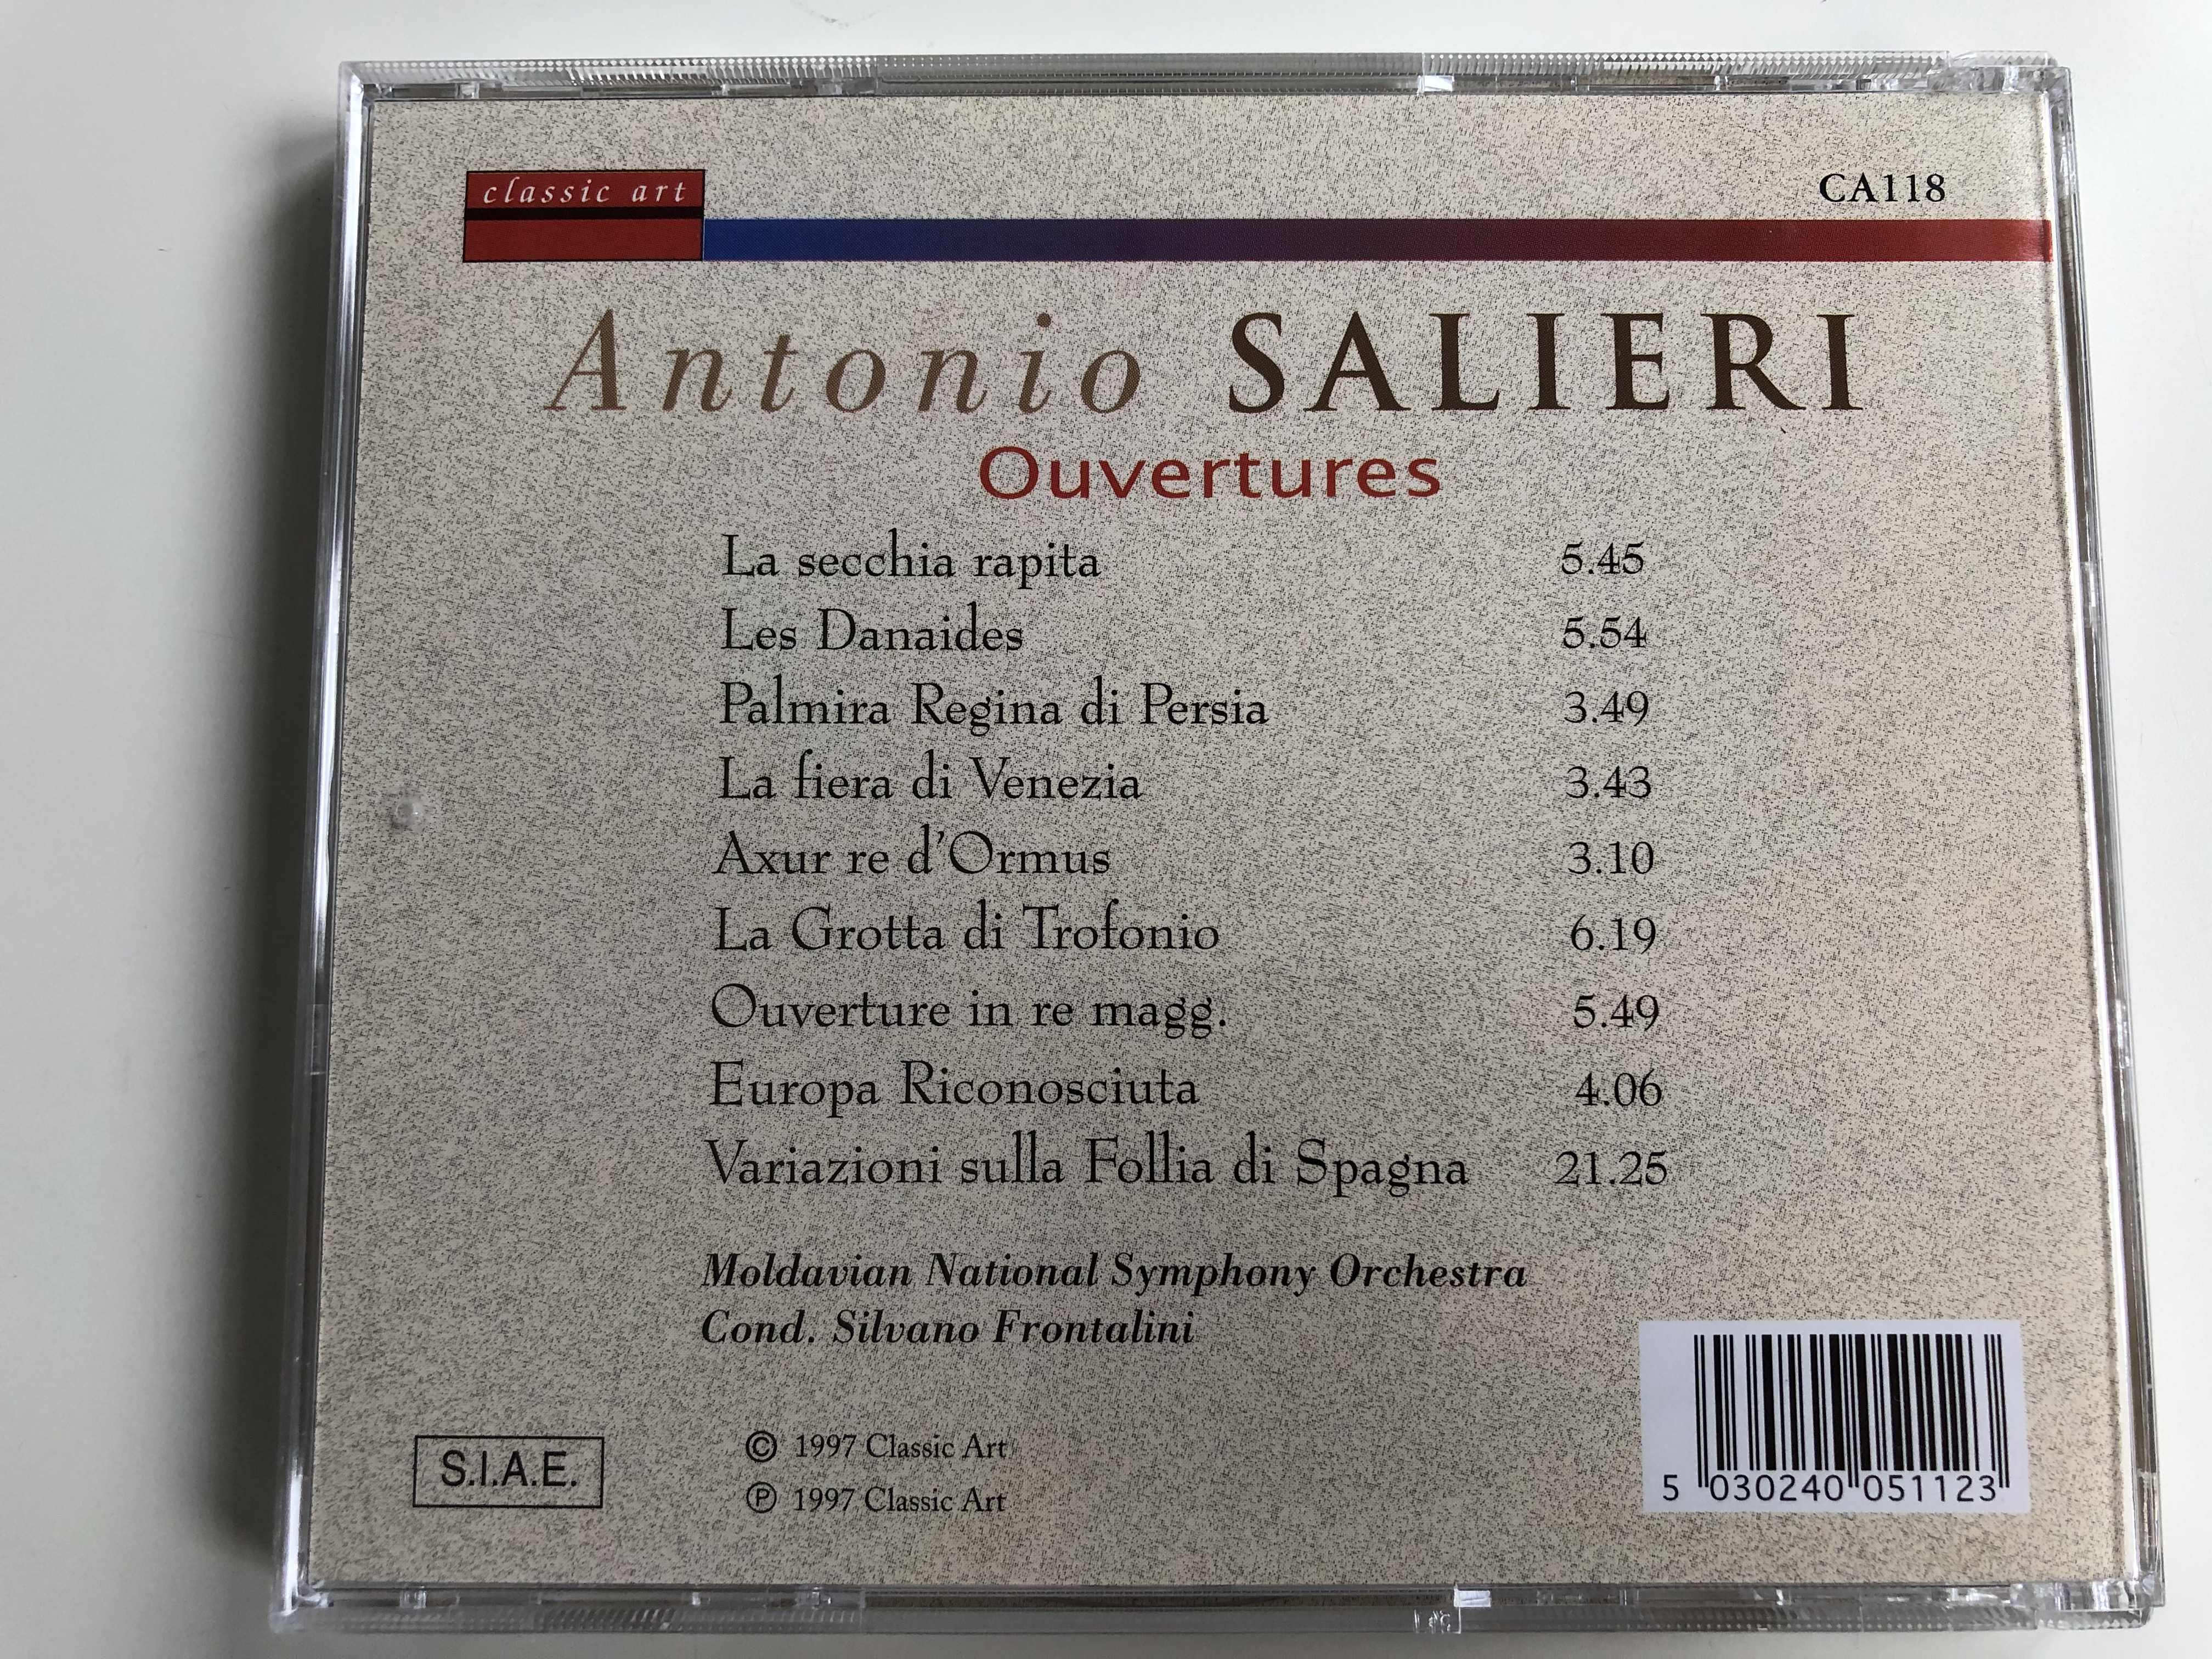 antonio-salieri-ouvertures-classic-art-audio-cd-1997-ca118-4-.jpg